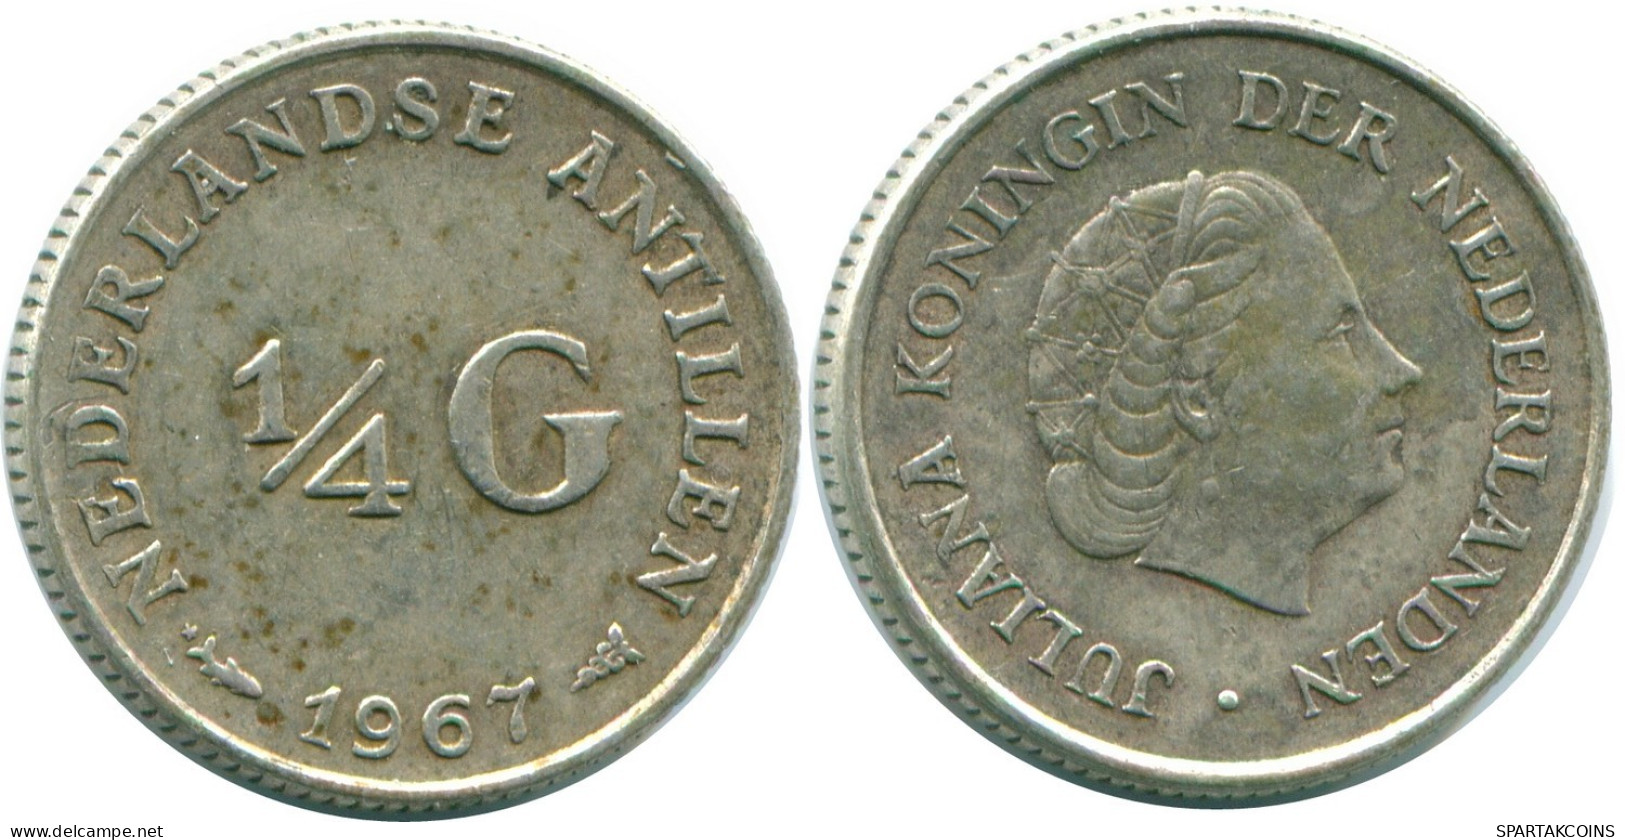 1/4 GULDEN 1967 NIEDERLÄNDISCHE ANTILLEN SILBER Koloniale Münze #NL11602.4.D.A - Antille Olandesi